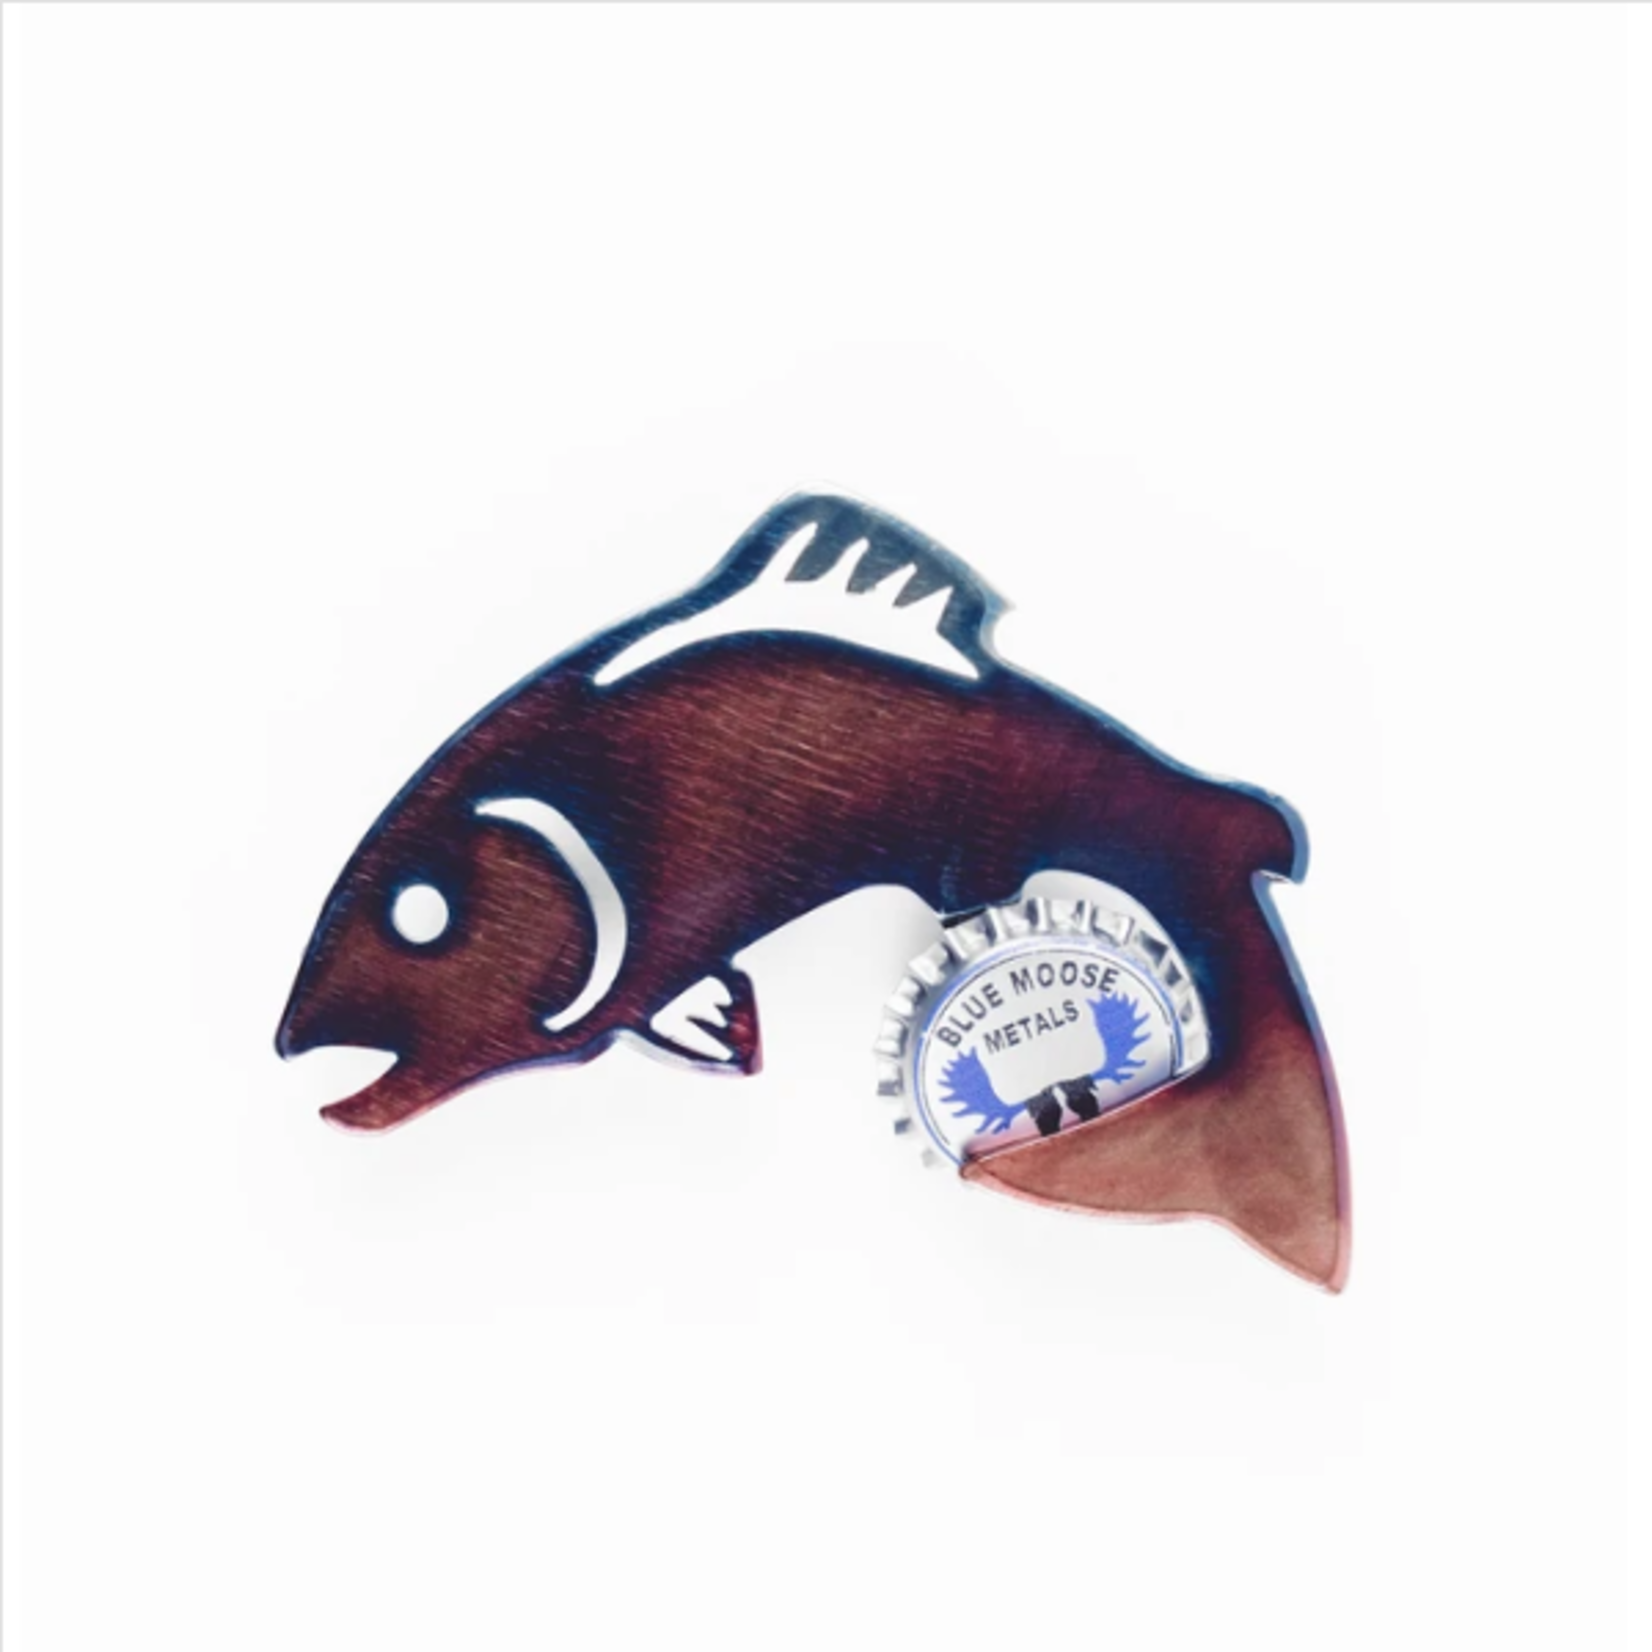 Blue Moose Metals Artisan Bottle Opener - Fish